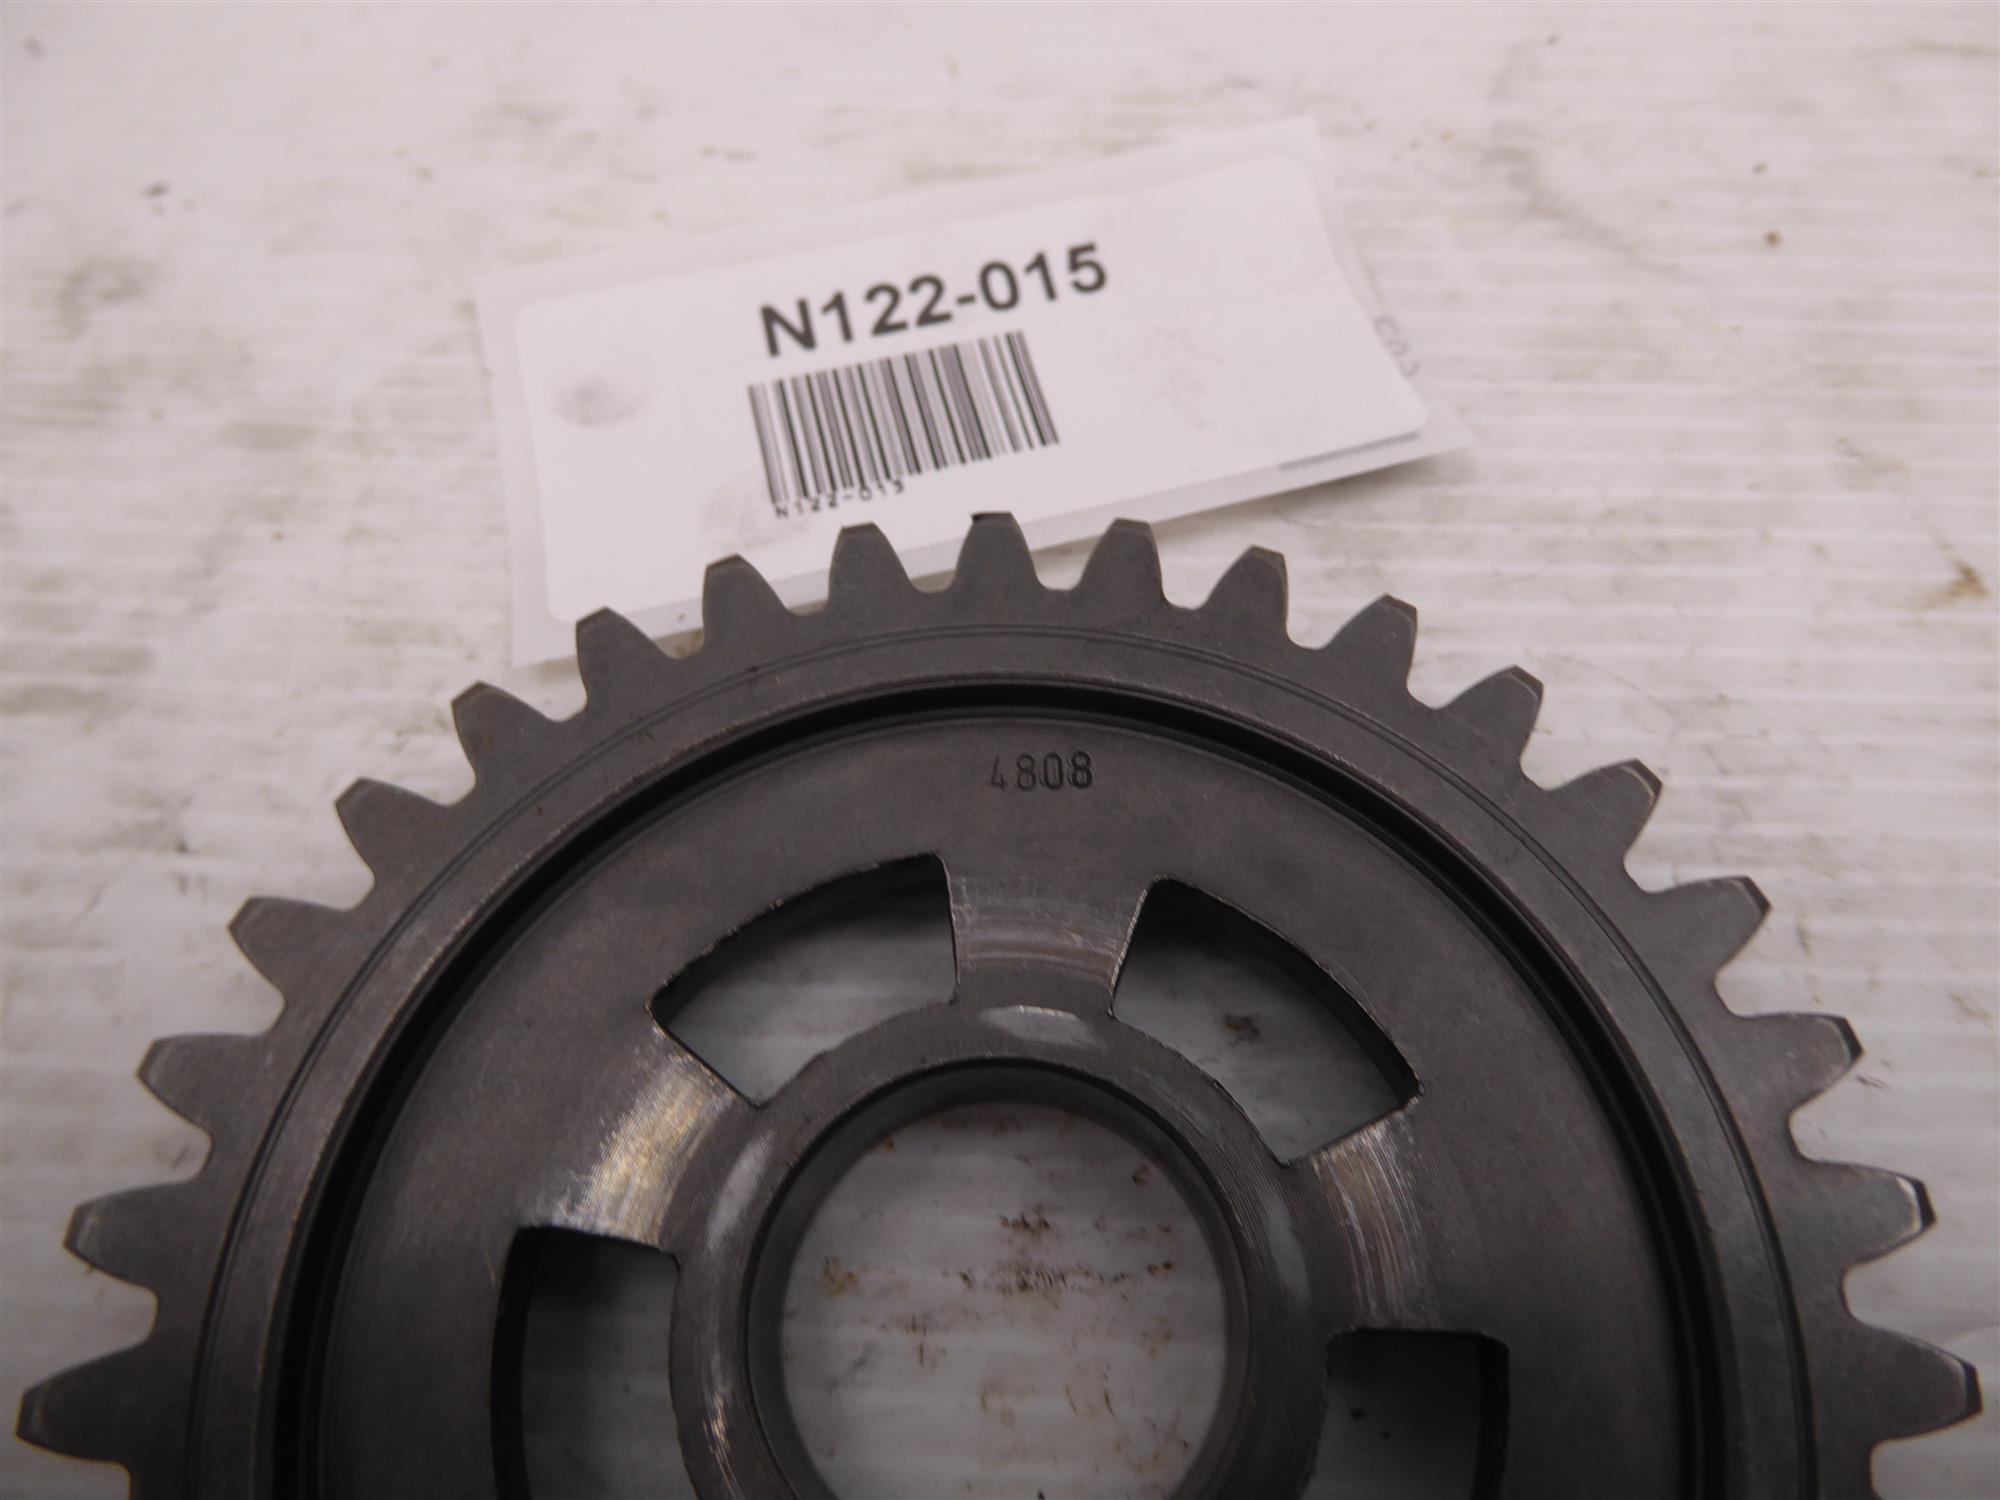 Aprilia RS125 Rotax 123 Getriebe Zahnrad 34Z 4808